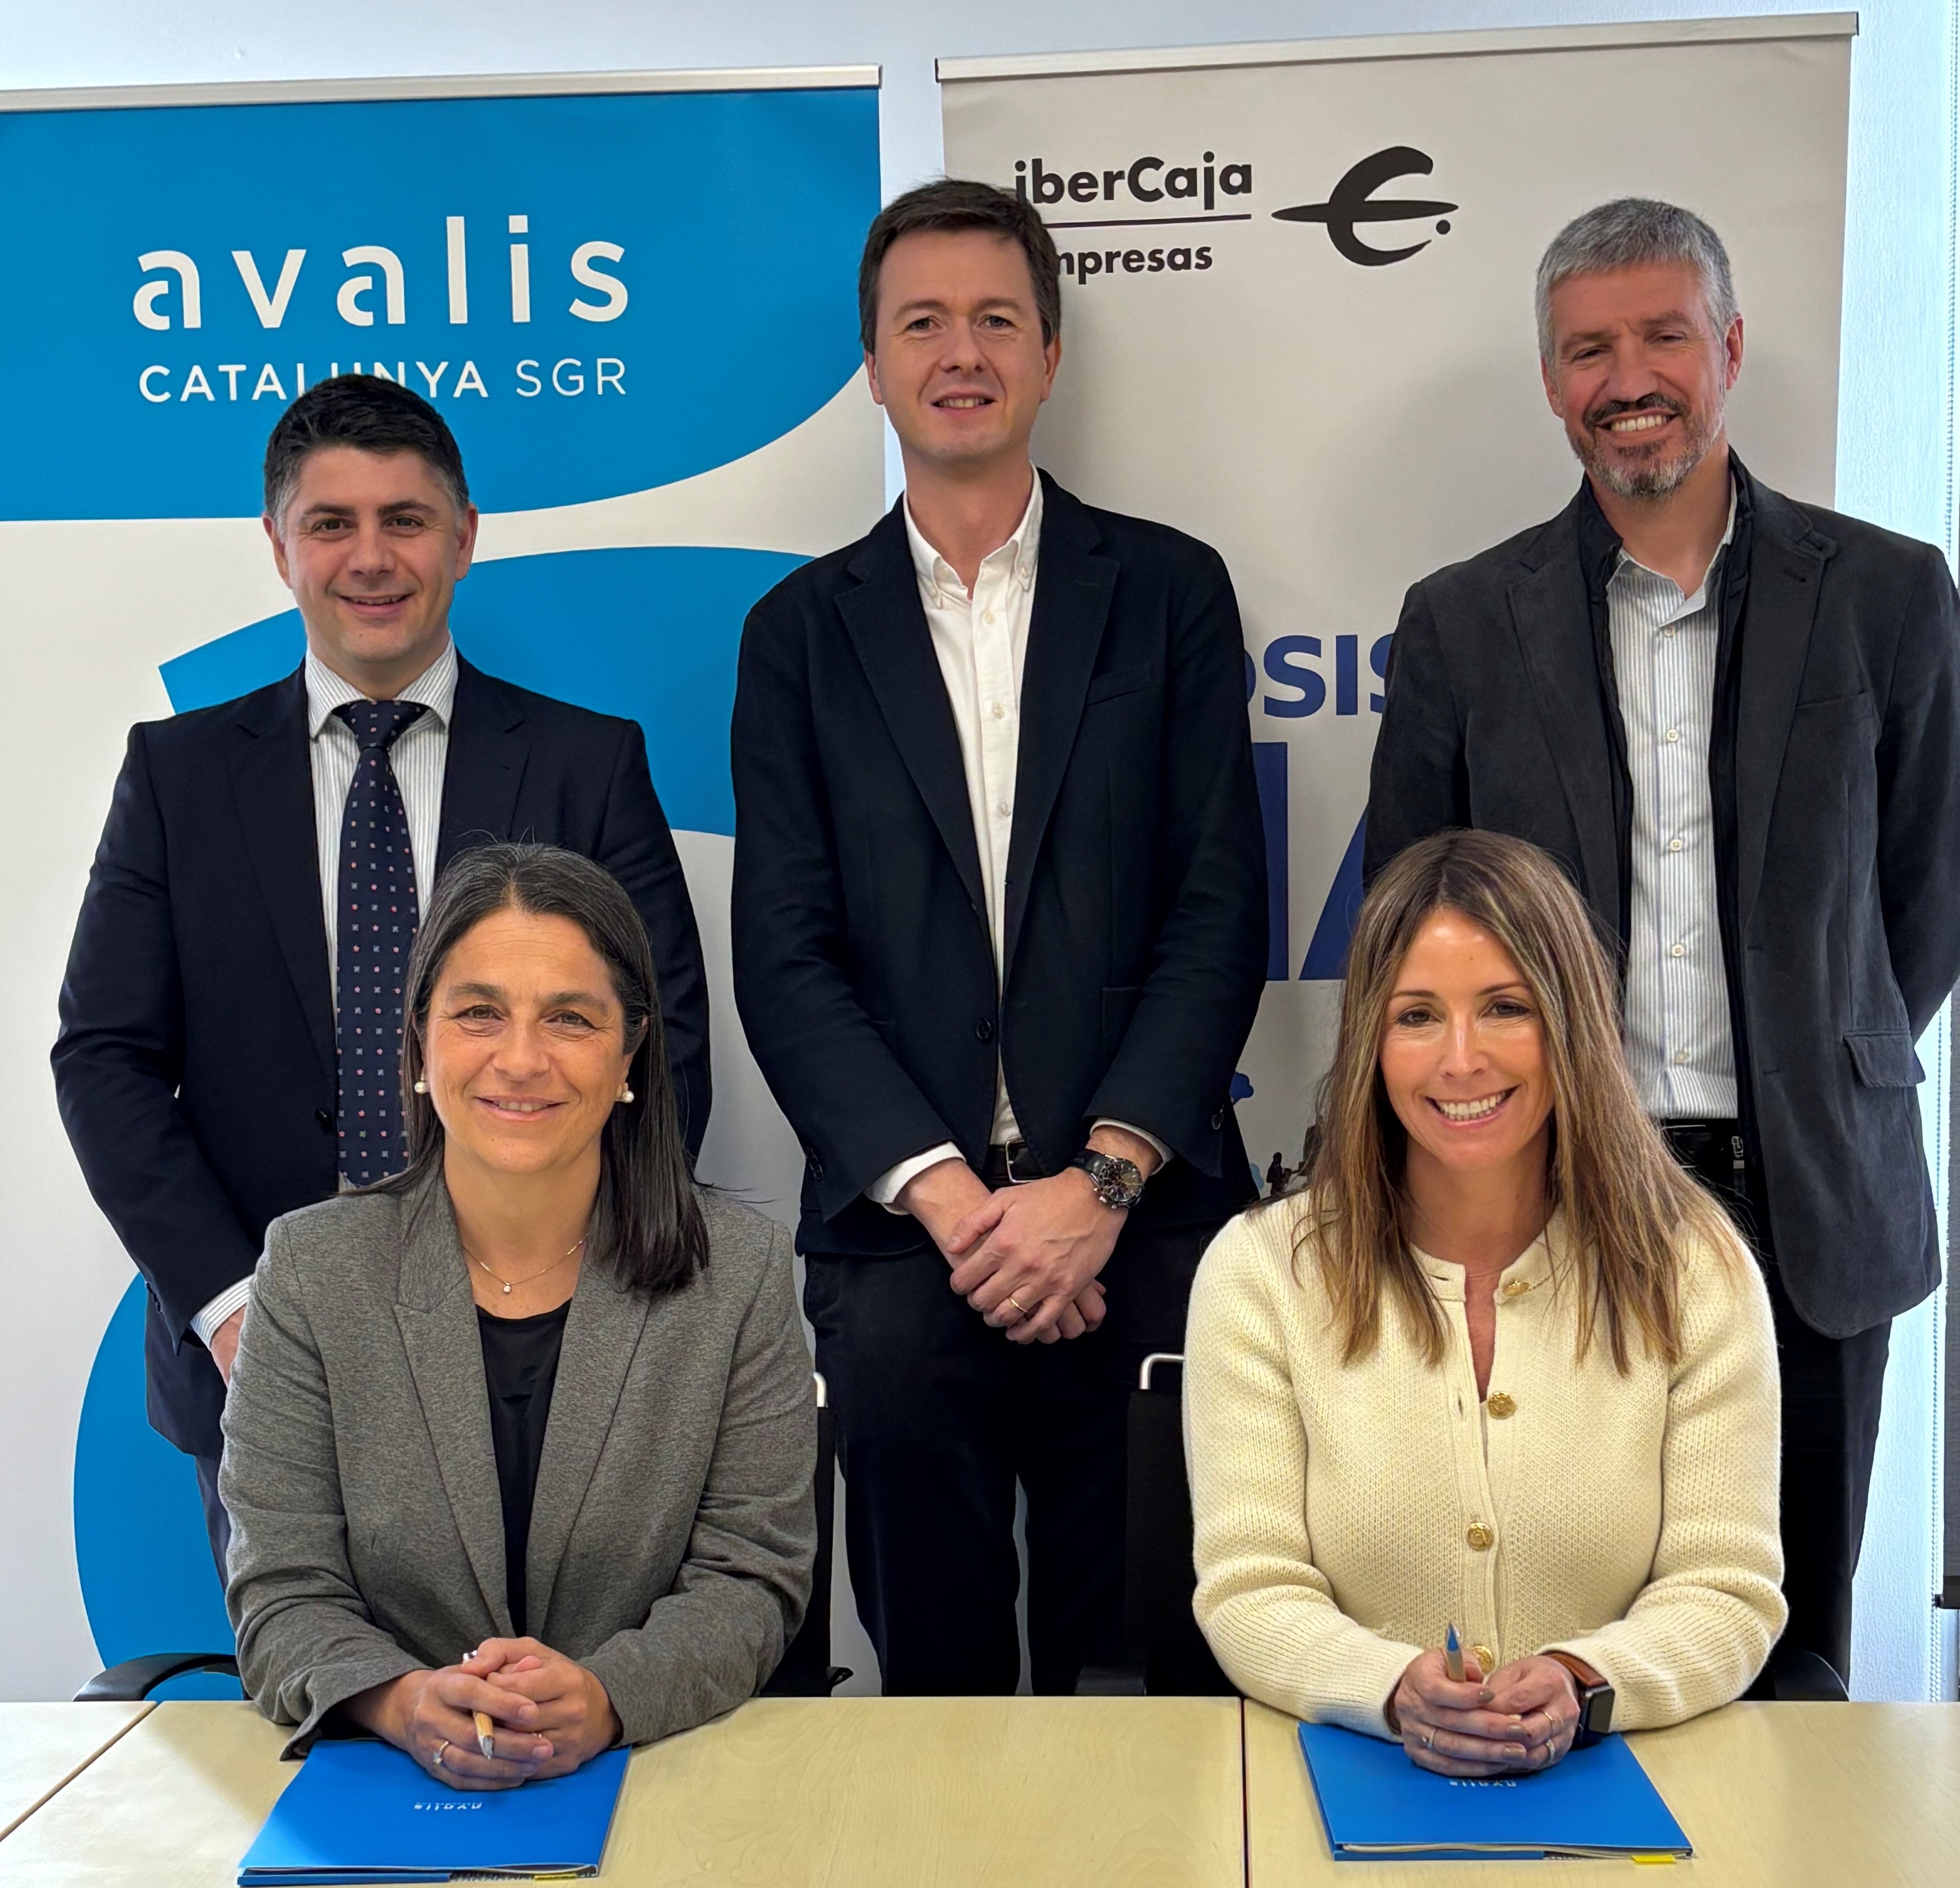 Avalis de Catalunya e Ibercaja firman un acuerdo para facilitar el crédito a pymes y autónomos